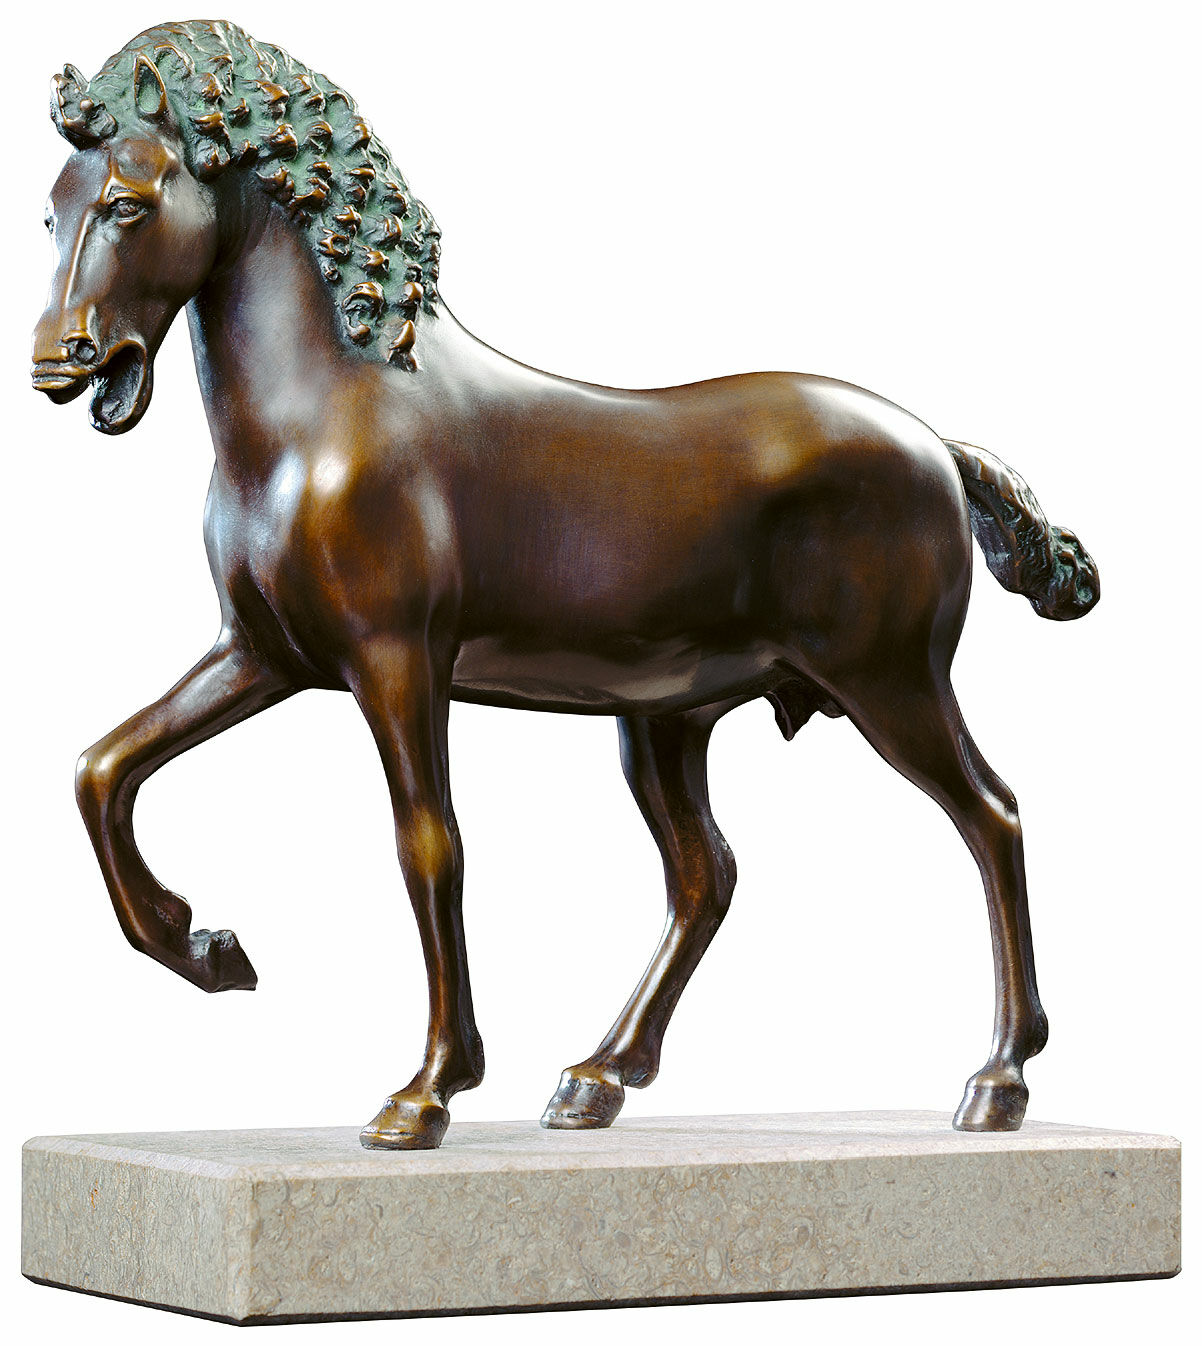 Sculpture "Cavallo" (c. 1492), bronze by Leonardo da Vinci